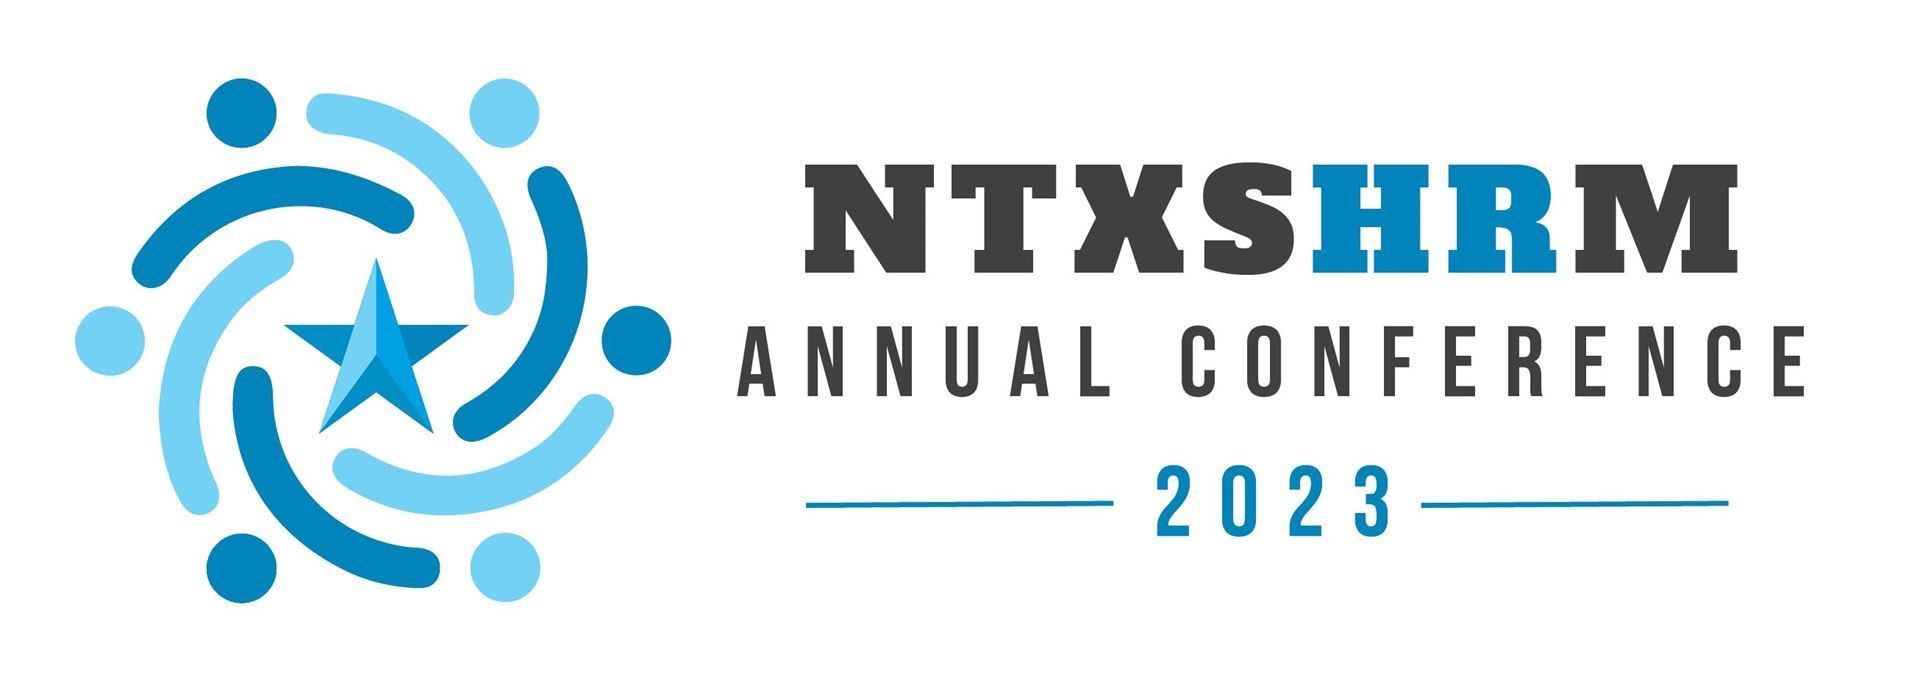 Texas SHRM NTX SHRM 2023 North Texas SHRM Annual Conference